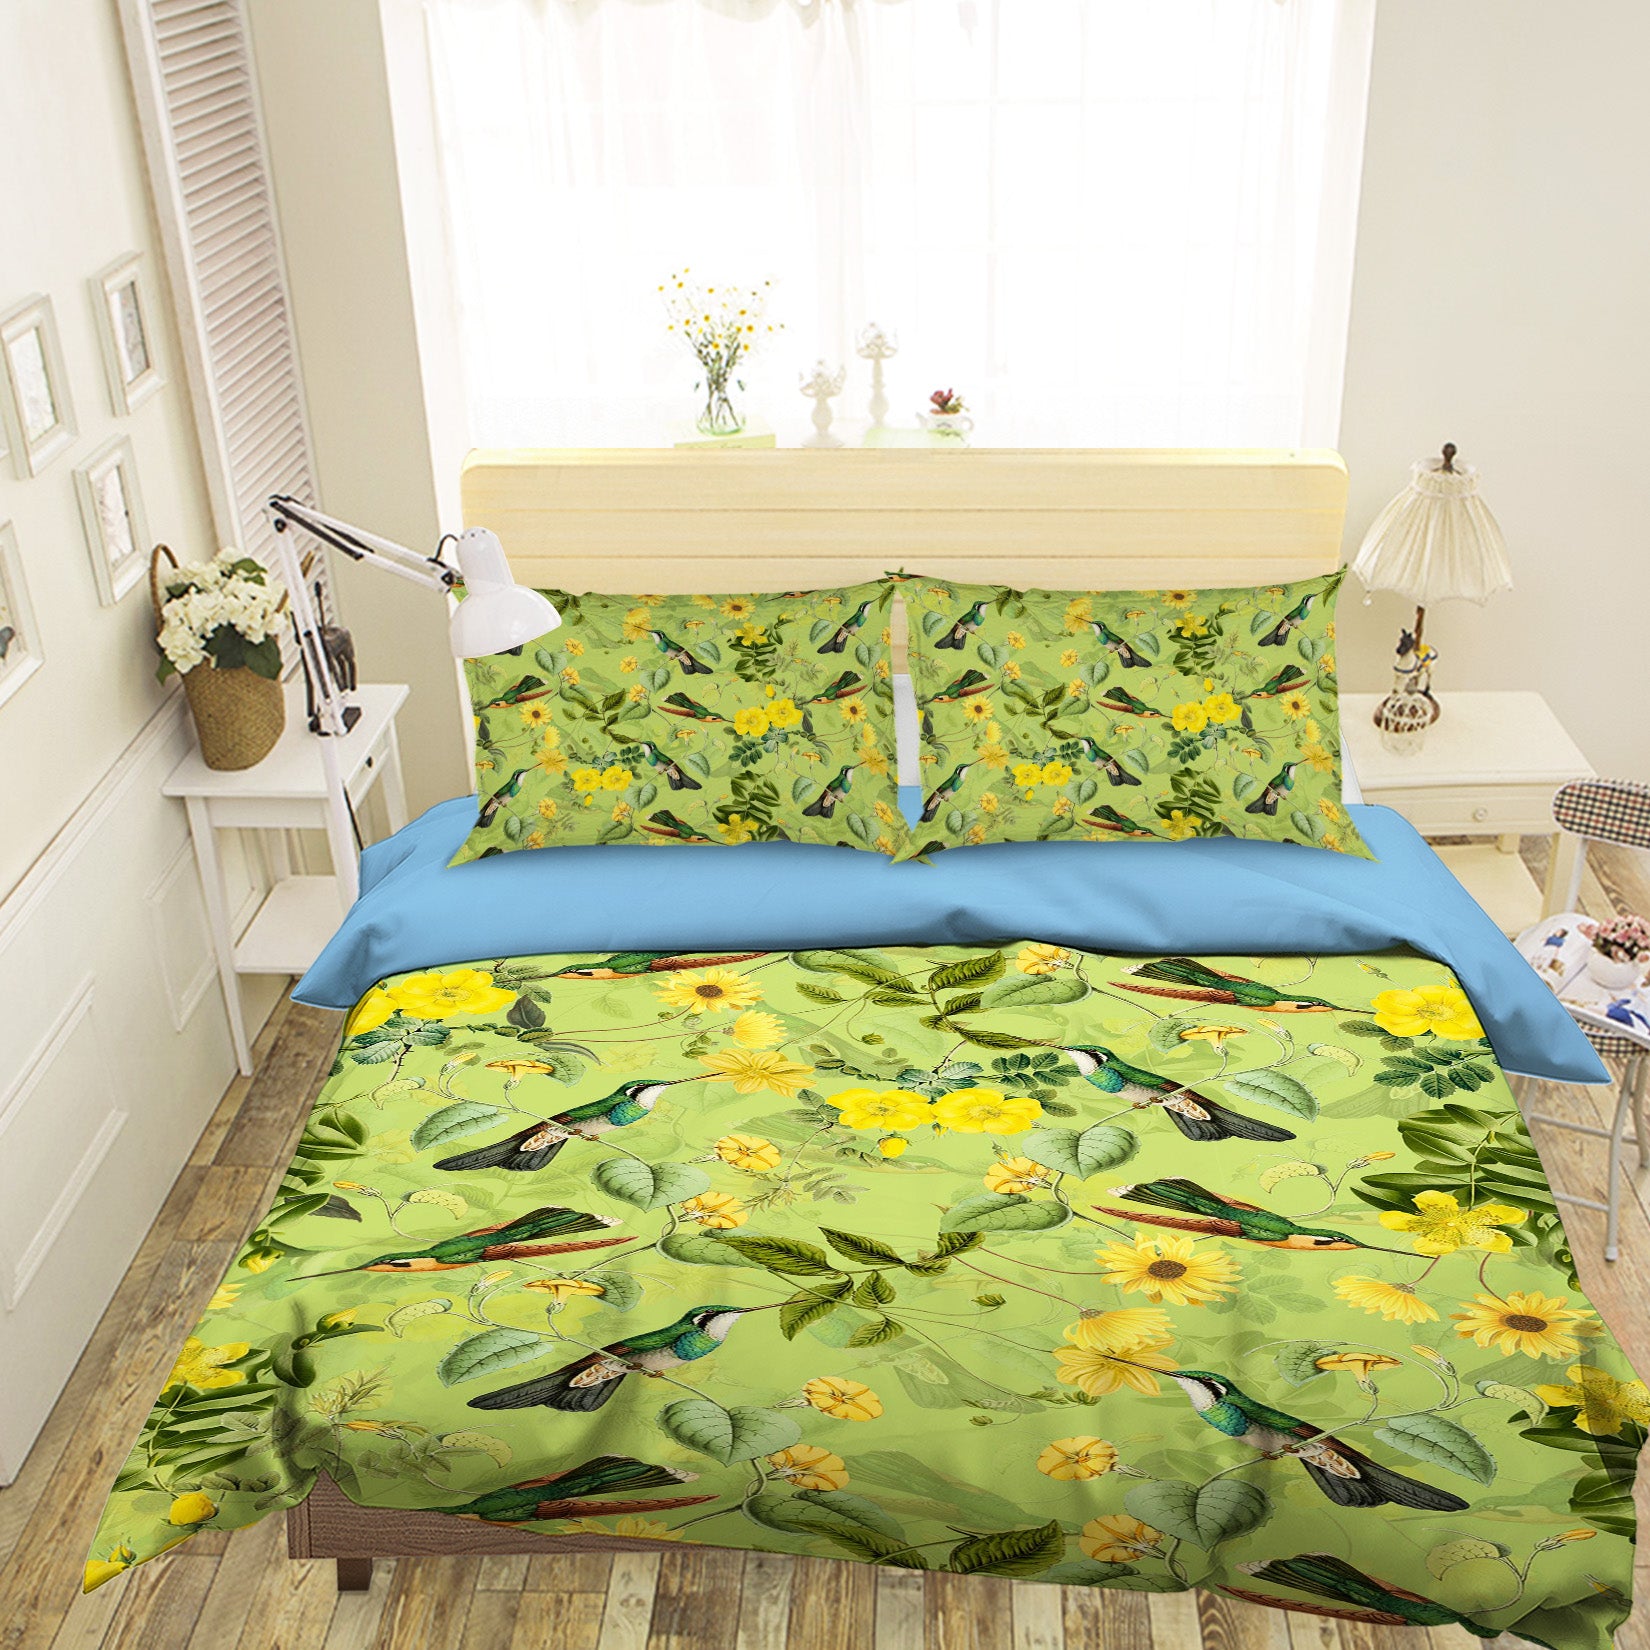 3D Bird Sunflower 145 Uta Naumann Bedding Bed Pillowcases Quilt